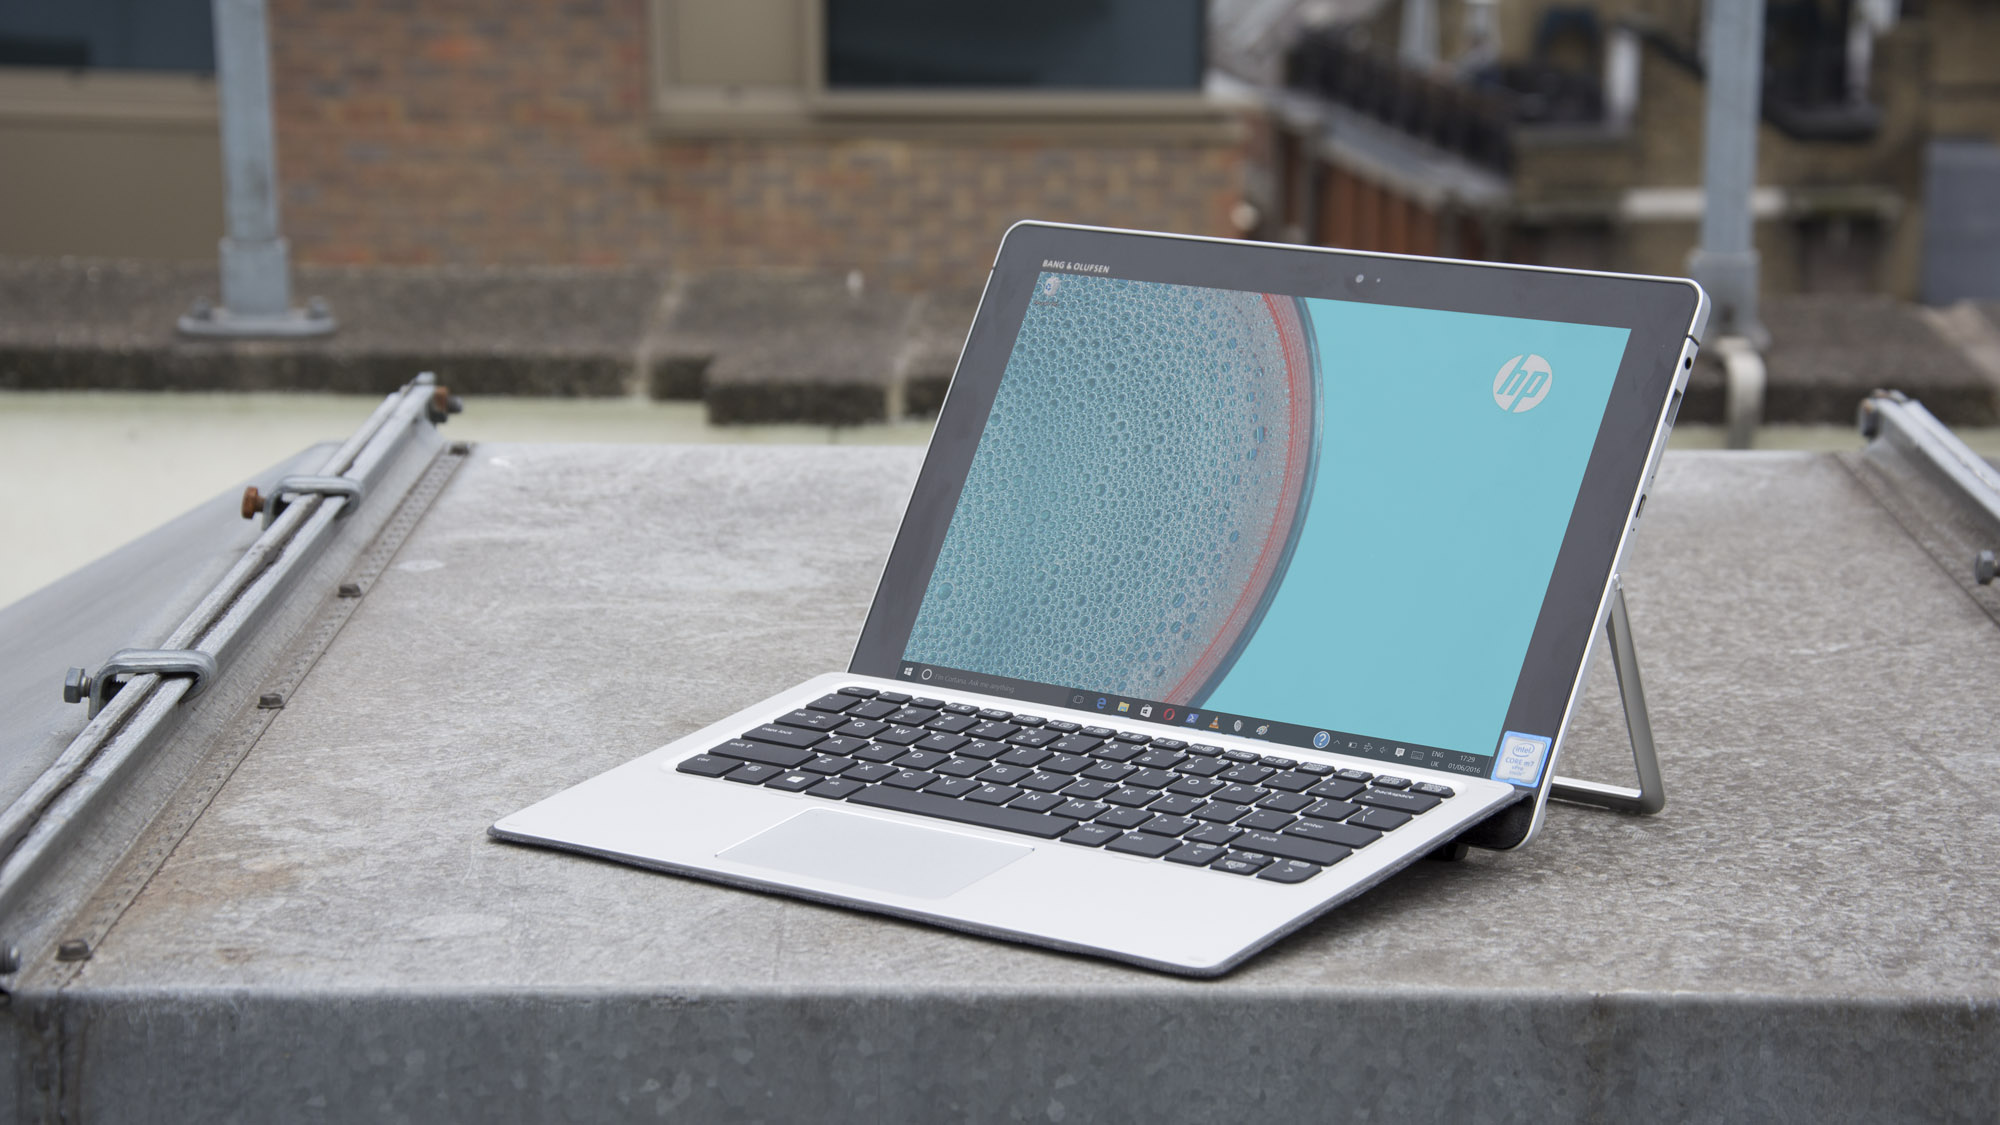 Revisión de HP Elite x2: supera a Surface Pro 4 en algunos aspectos (pero no en otros)